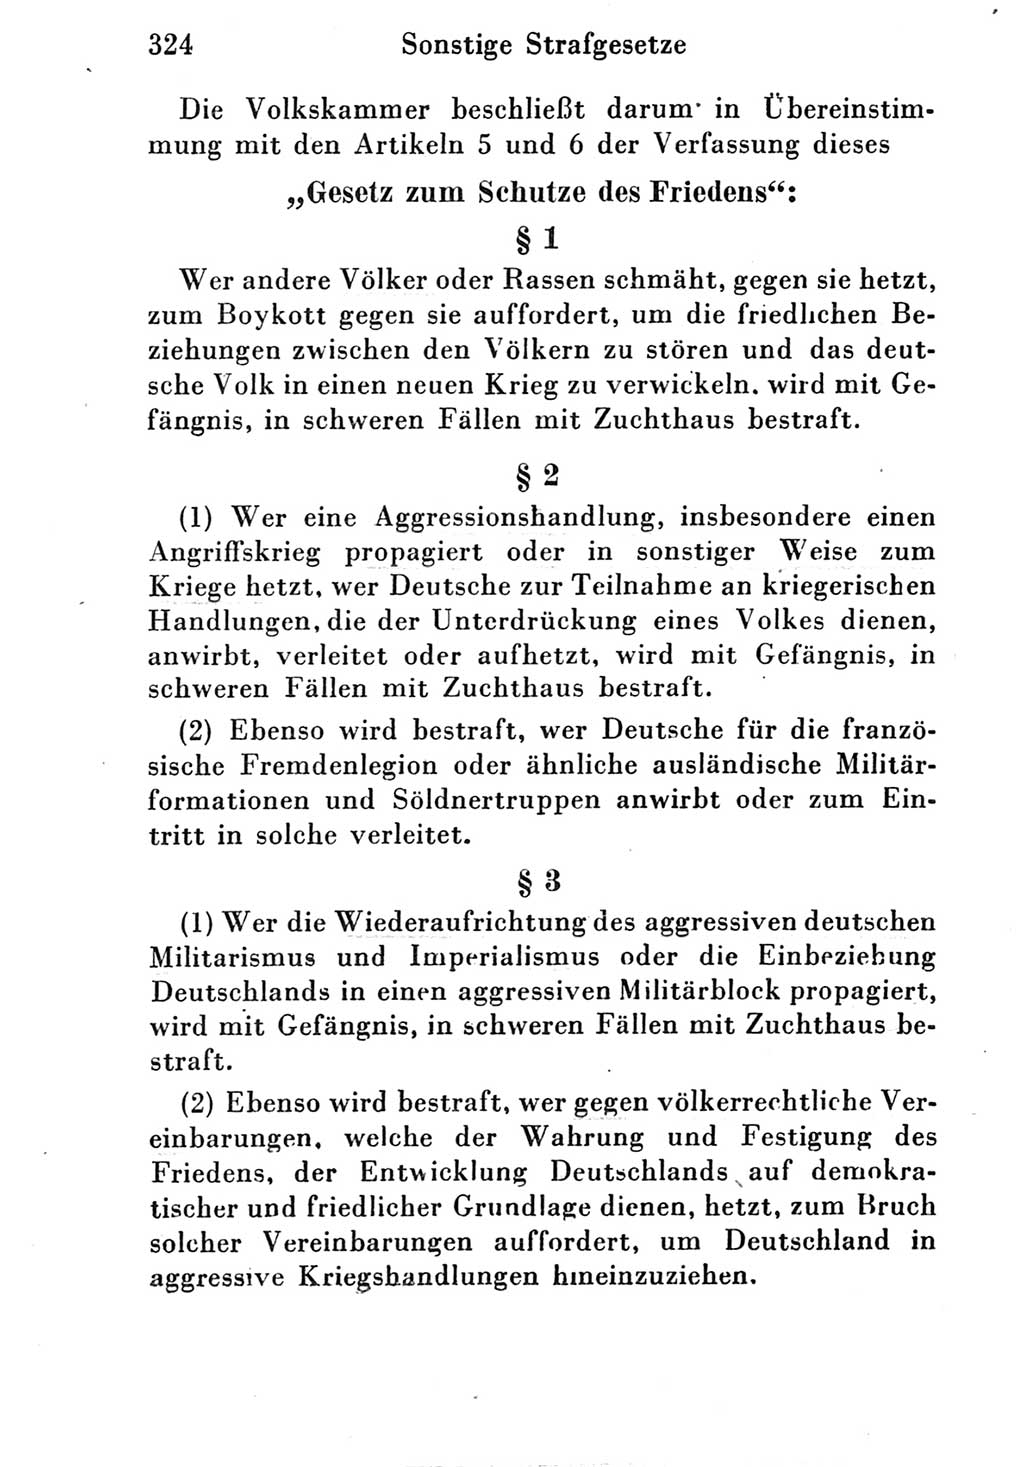 Strafgesetzbuch (StGB) und andere Strafgesetze [Deutsche Demokratische Republik (DDR)] 1951, Seite 324 (StGB Strafges. DDR 1951, S. 324)